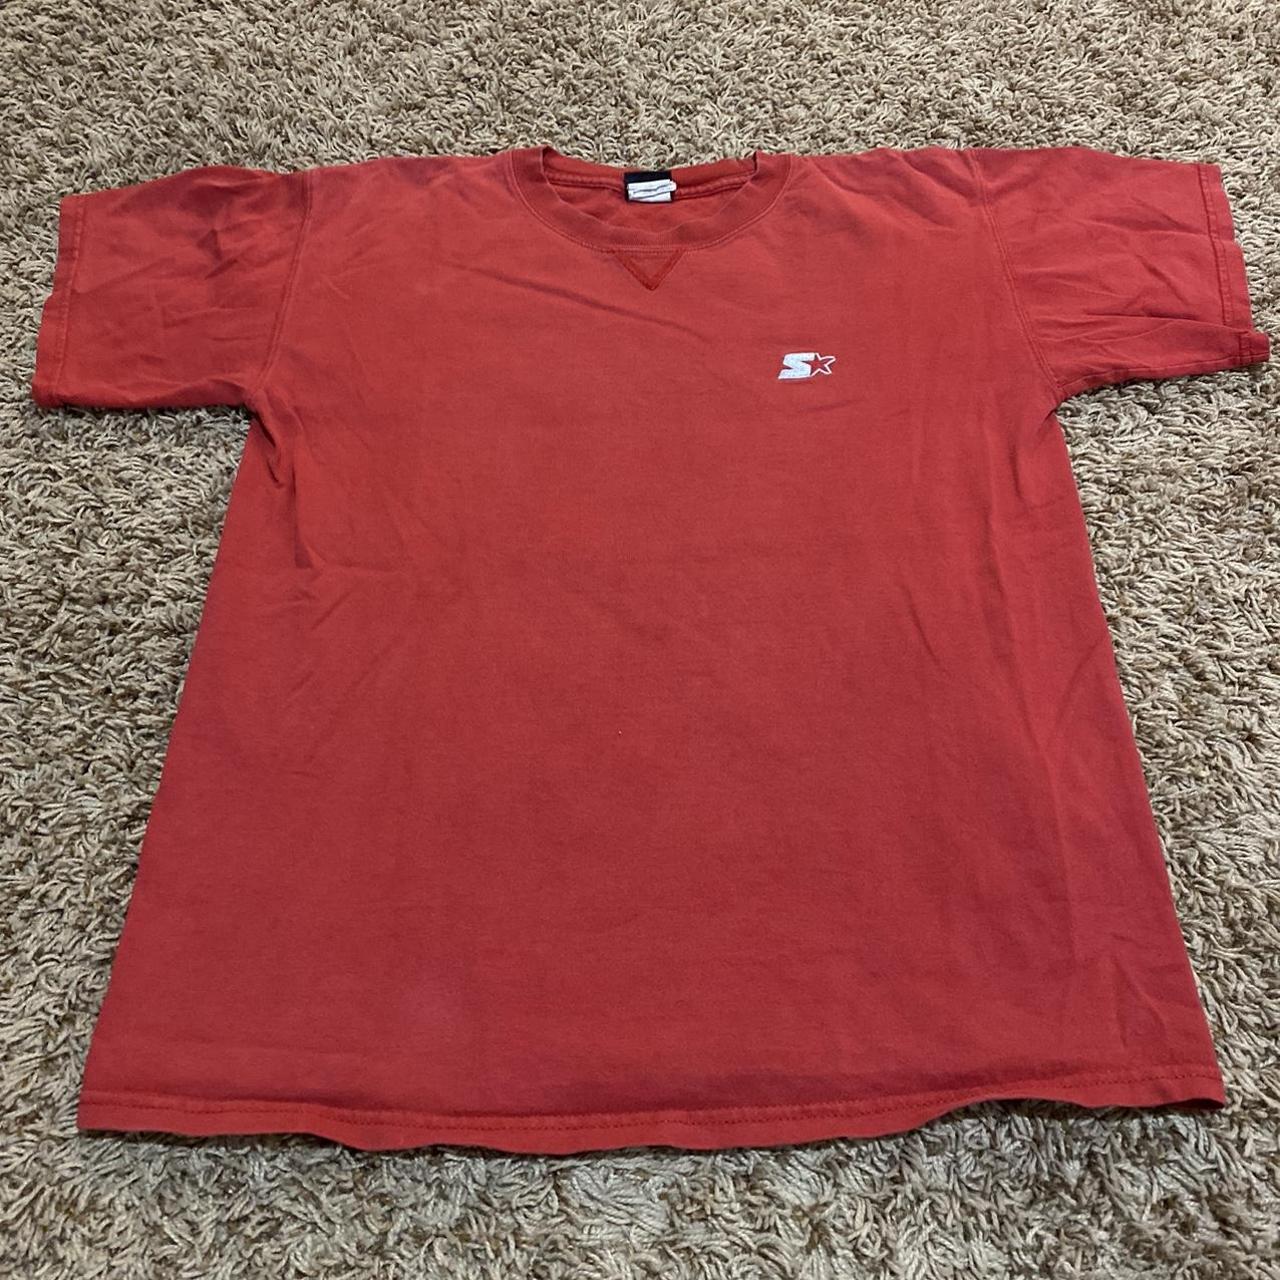 Starter Men's T-Shirt - Red - L